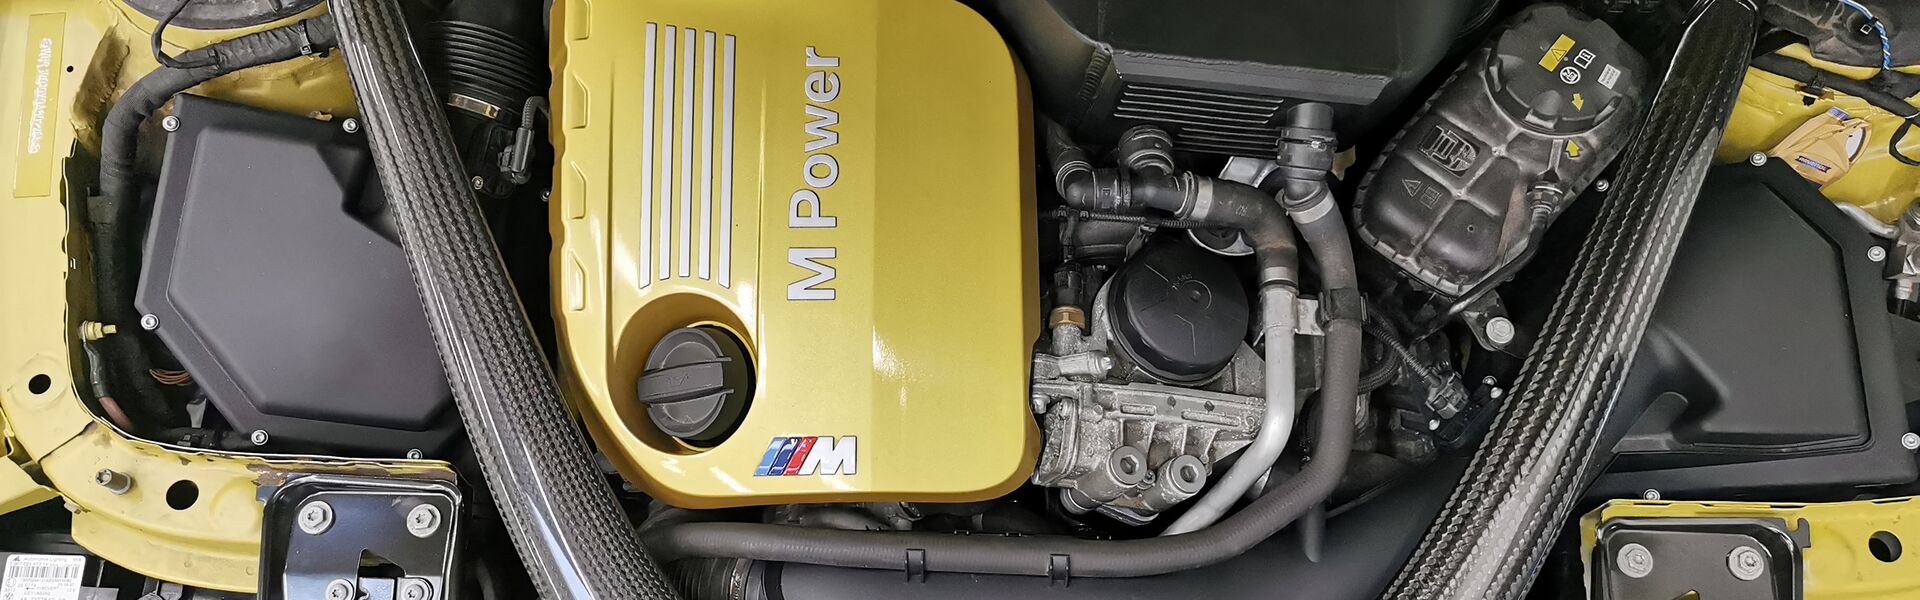 Engine McLaren 570S / 570S SPIDER / 570GT